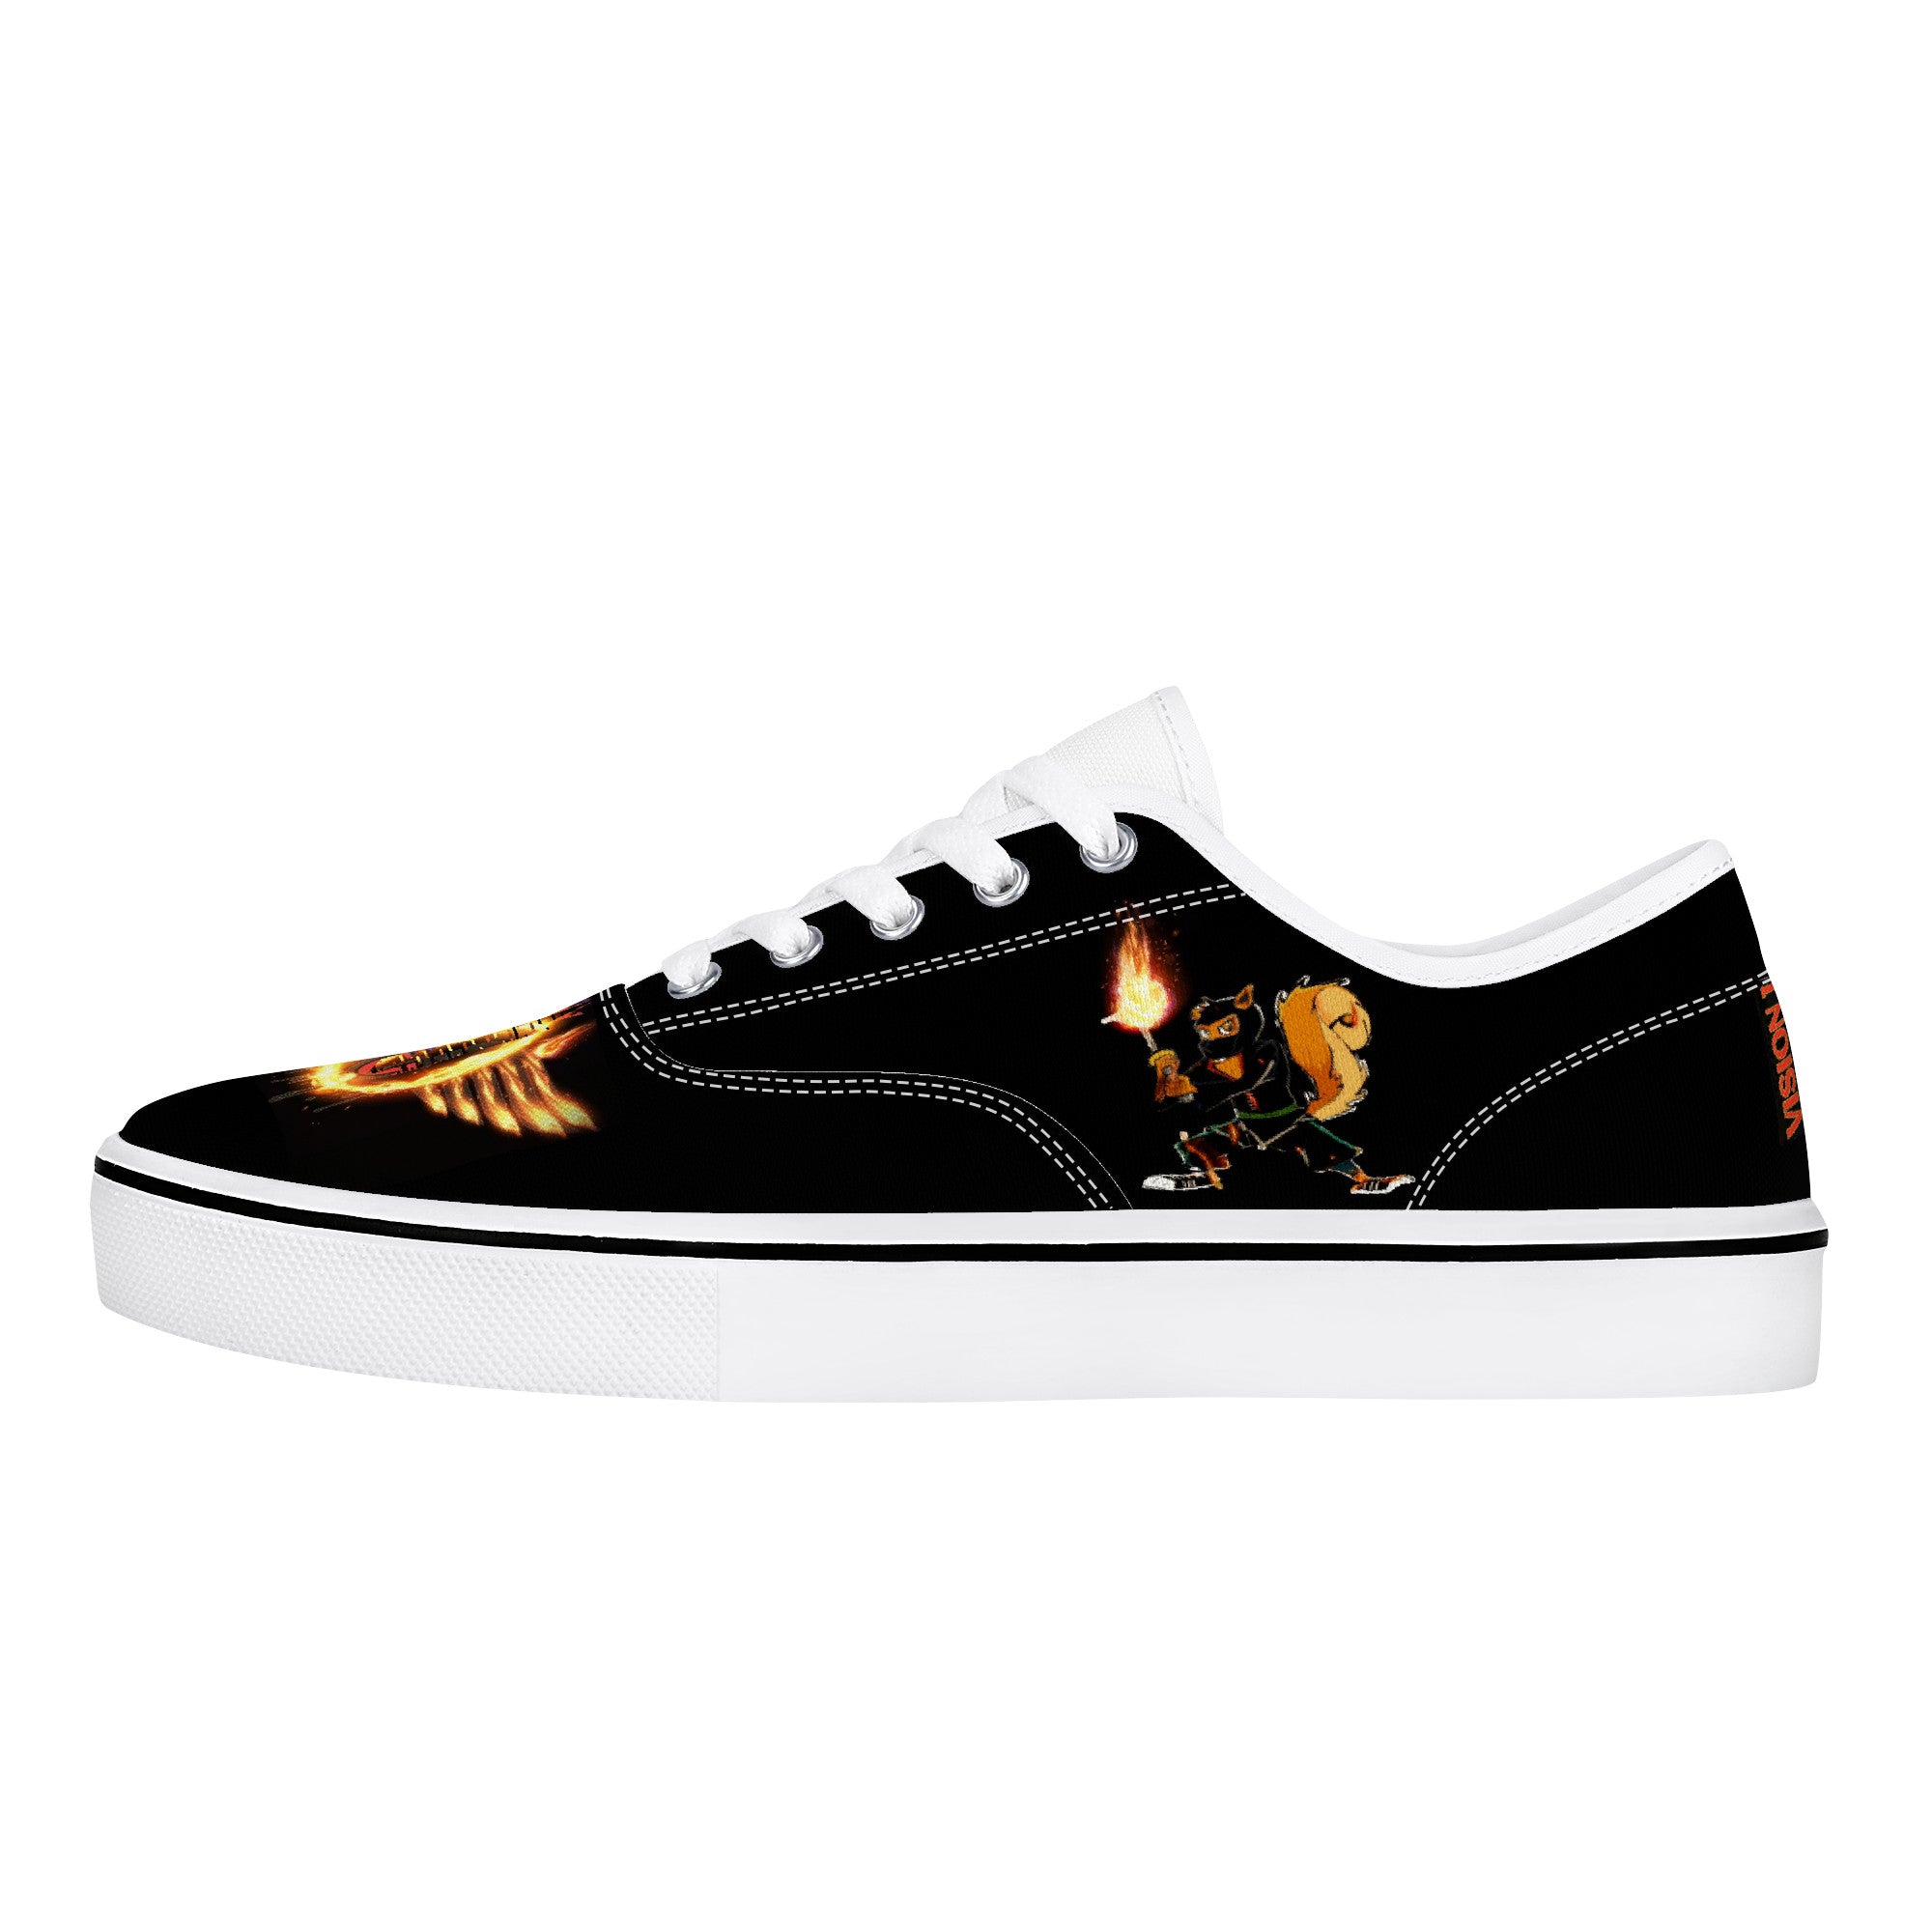 Majestics Black | Vision 1 Collection | Low Top Skate Shoe - Designed Shoe Drop - Shoe Zero